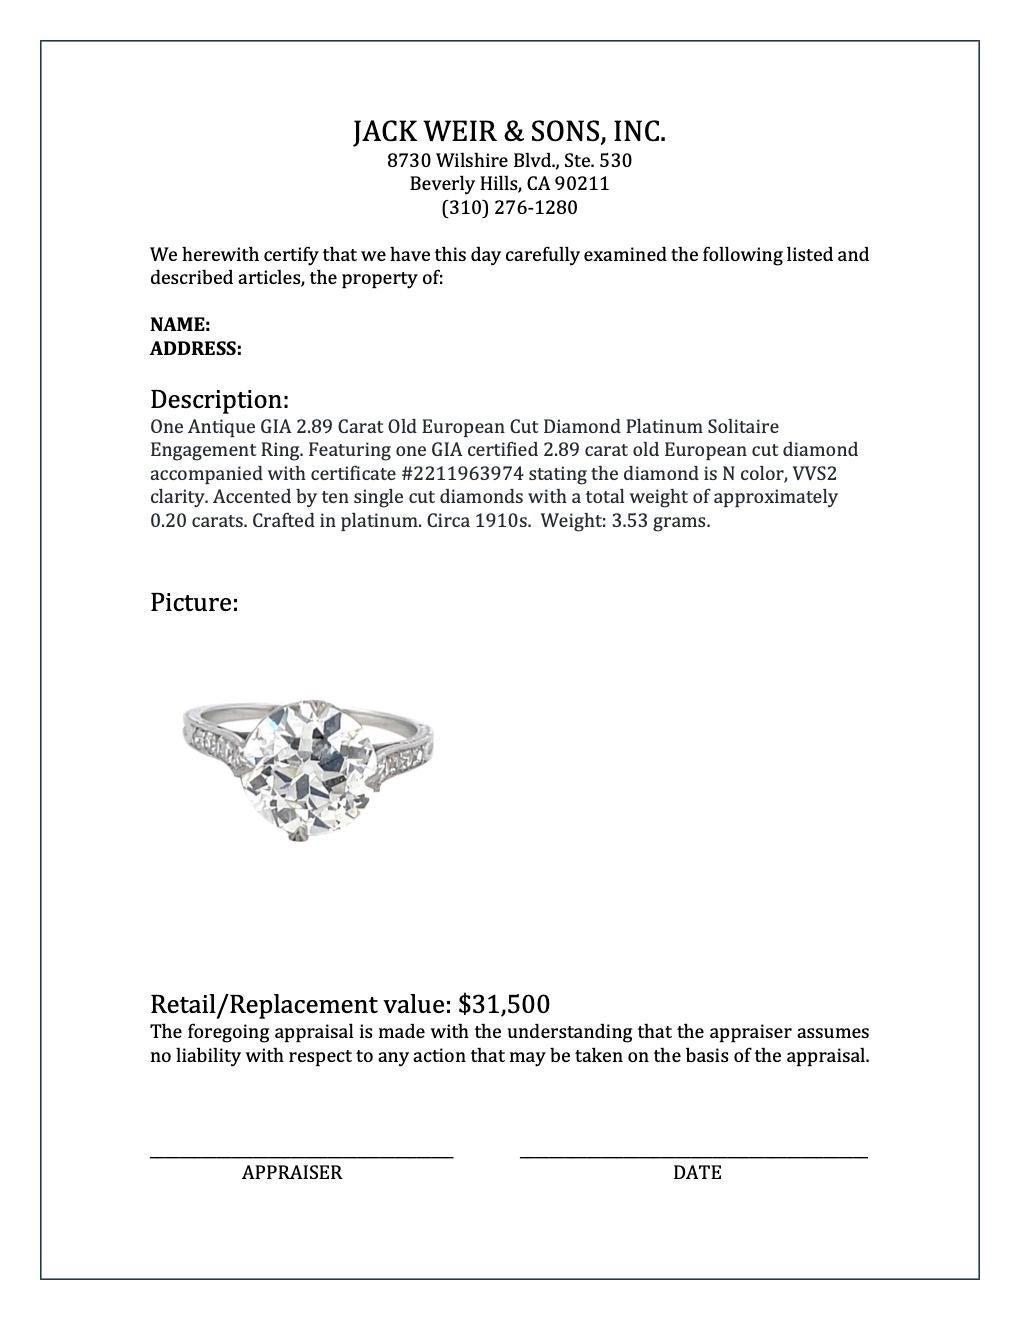 Antique GIA 2.89 Carat Old European Cut Diamond Platinum Engagement Ring 3